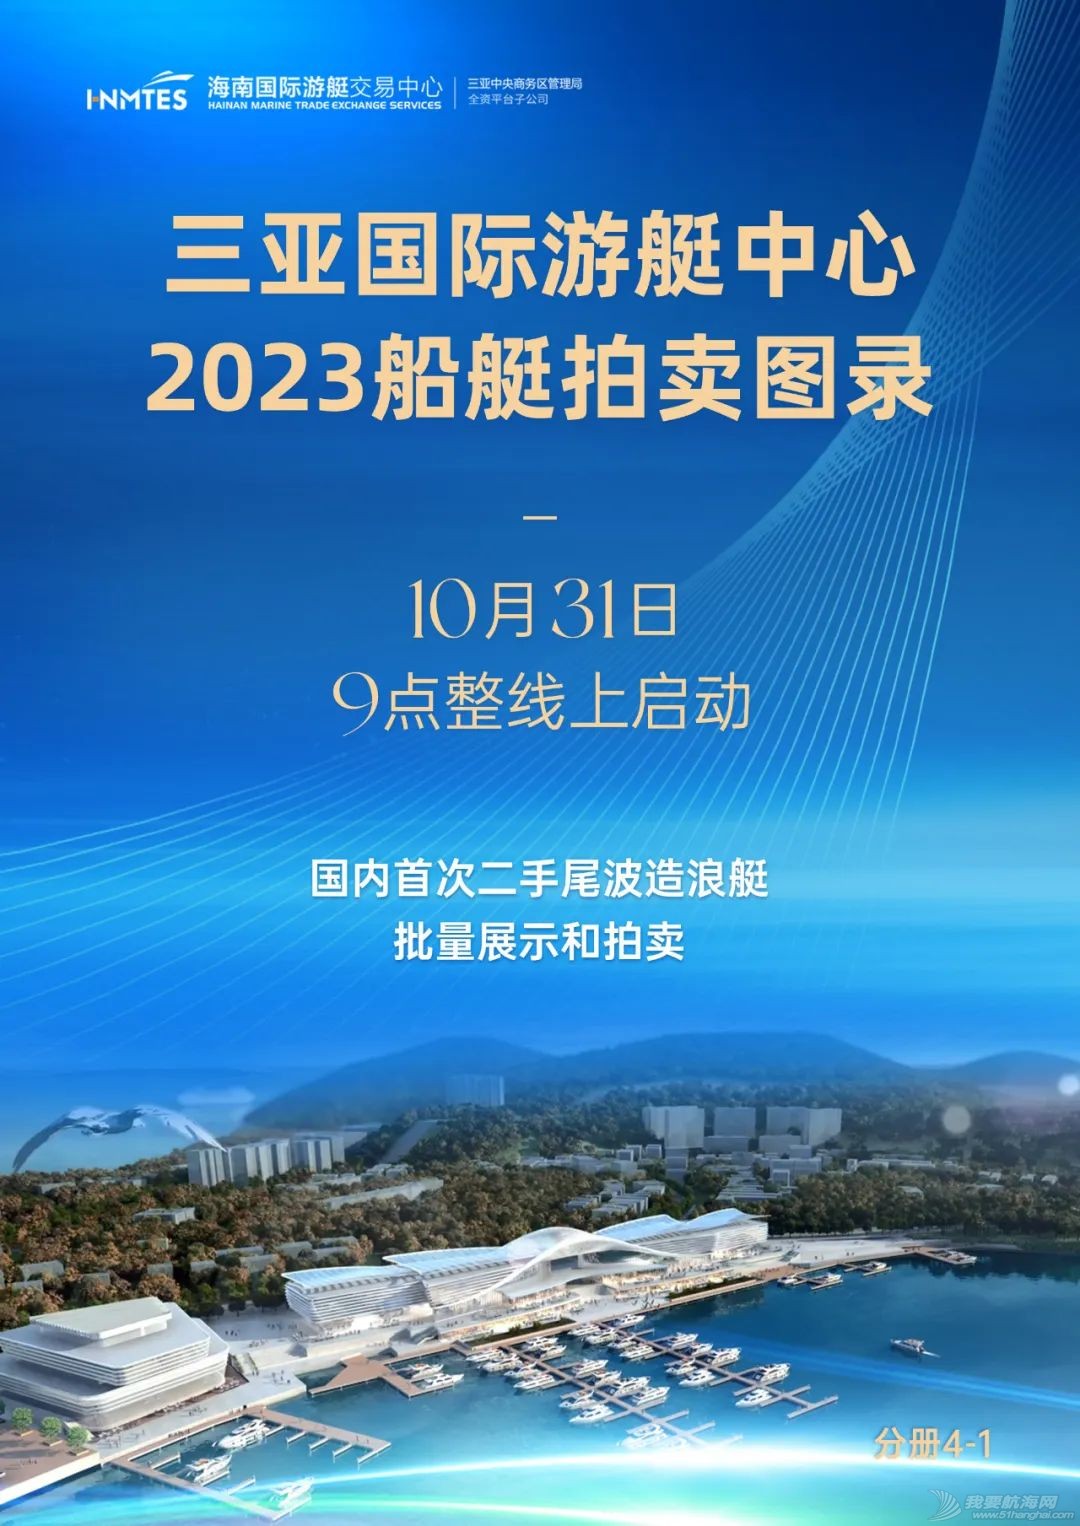 2023首次三亚游艇集中拍卖会正式启动!w2.jpg